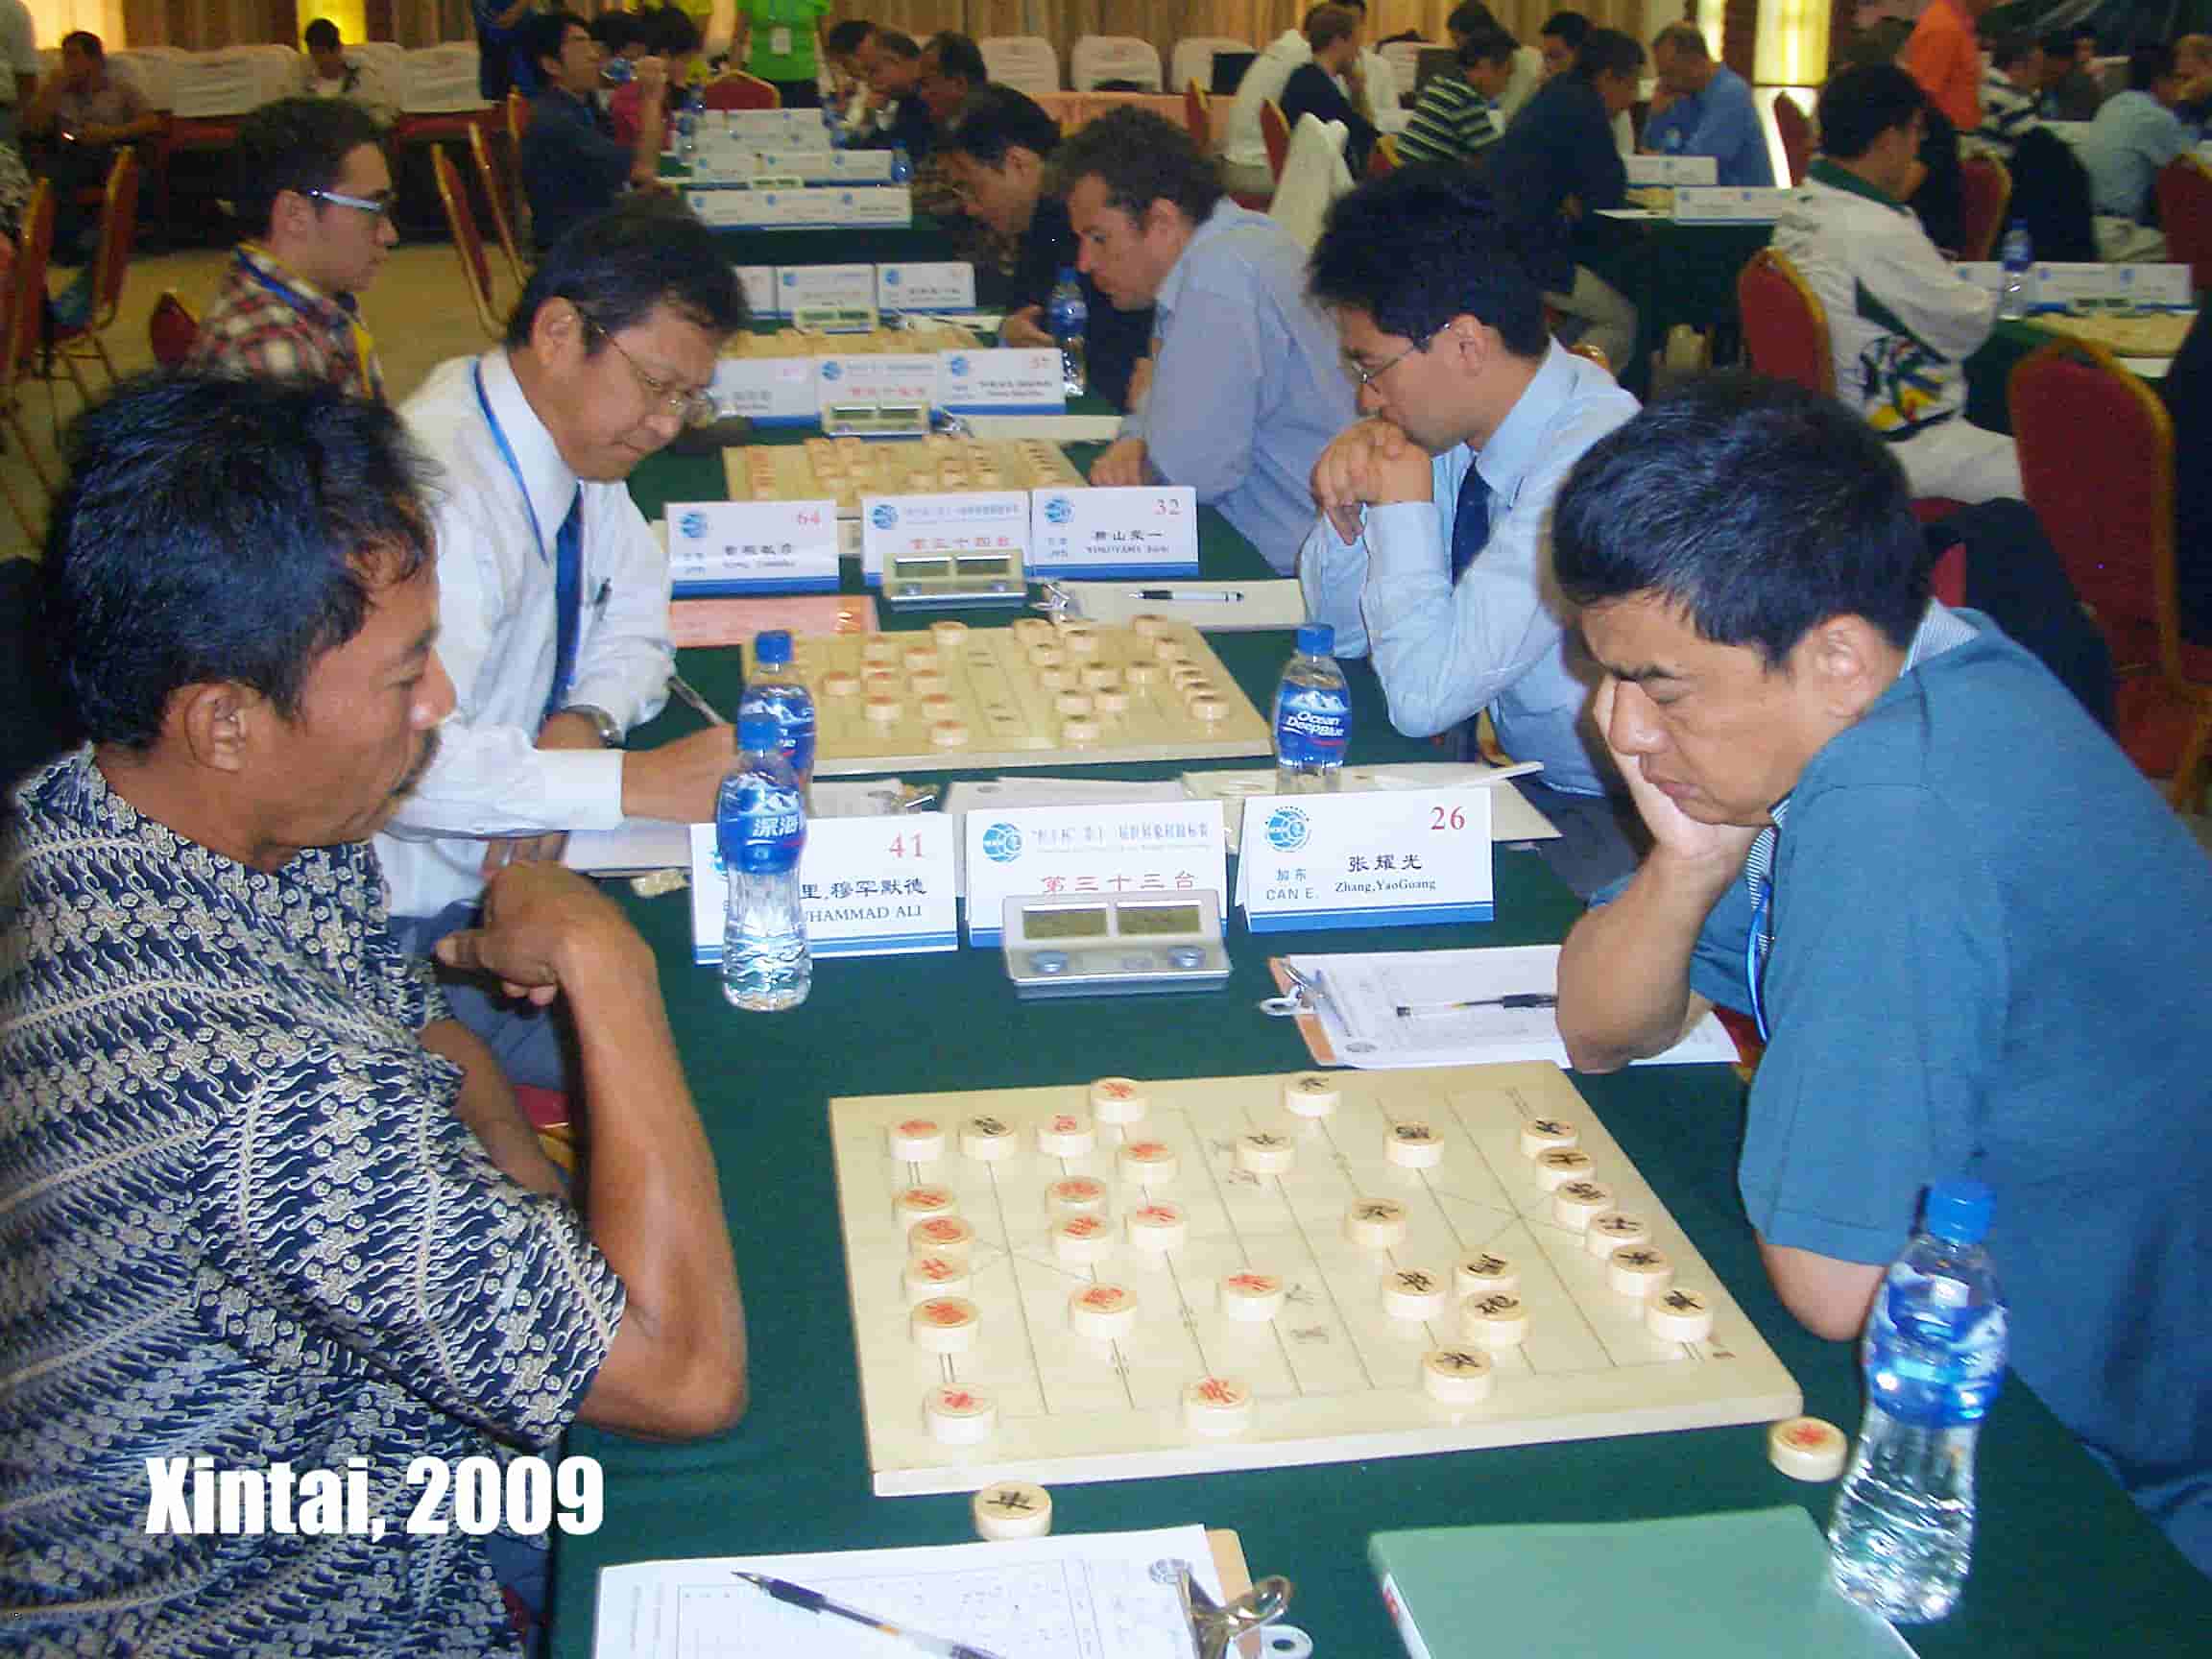 2009 World Xiangqi Championships